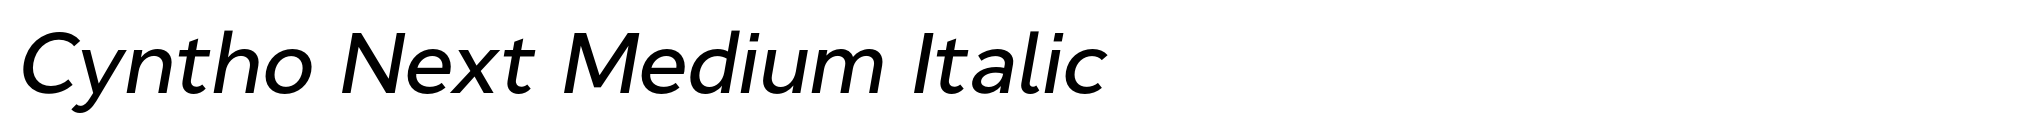 Cyntho Next Medium Italic image